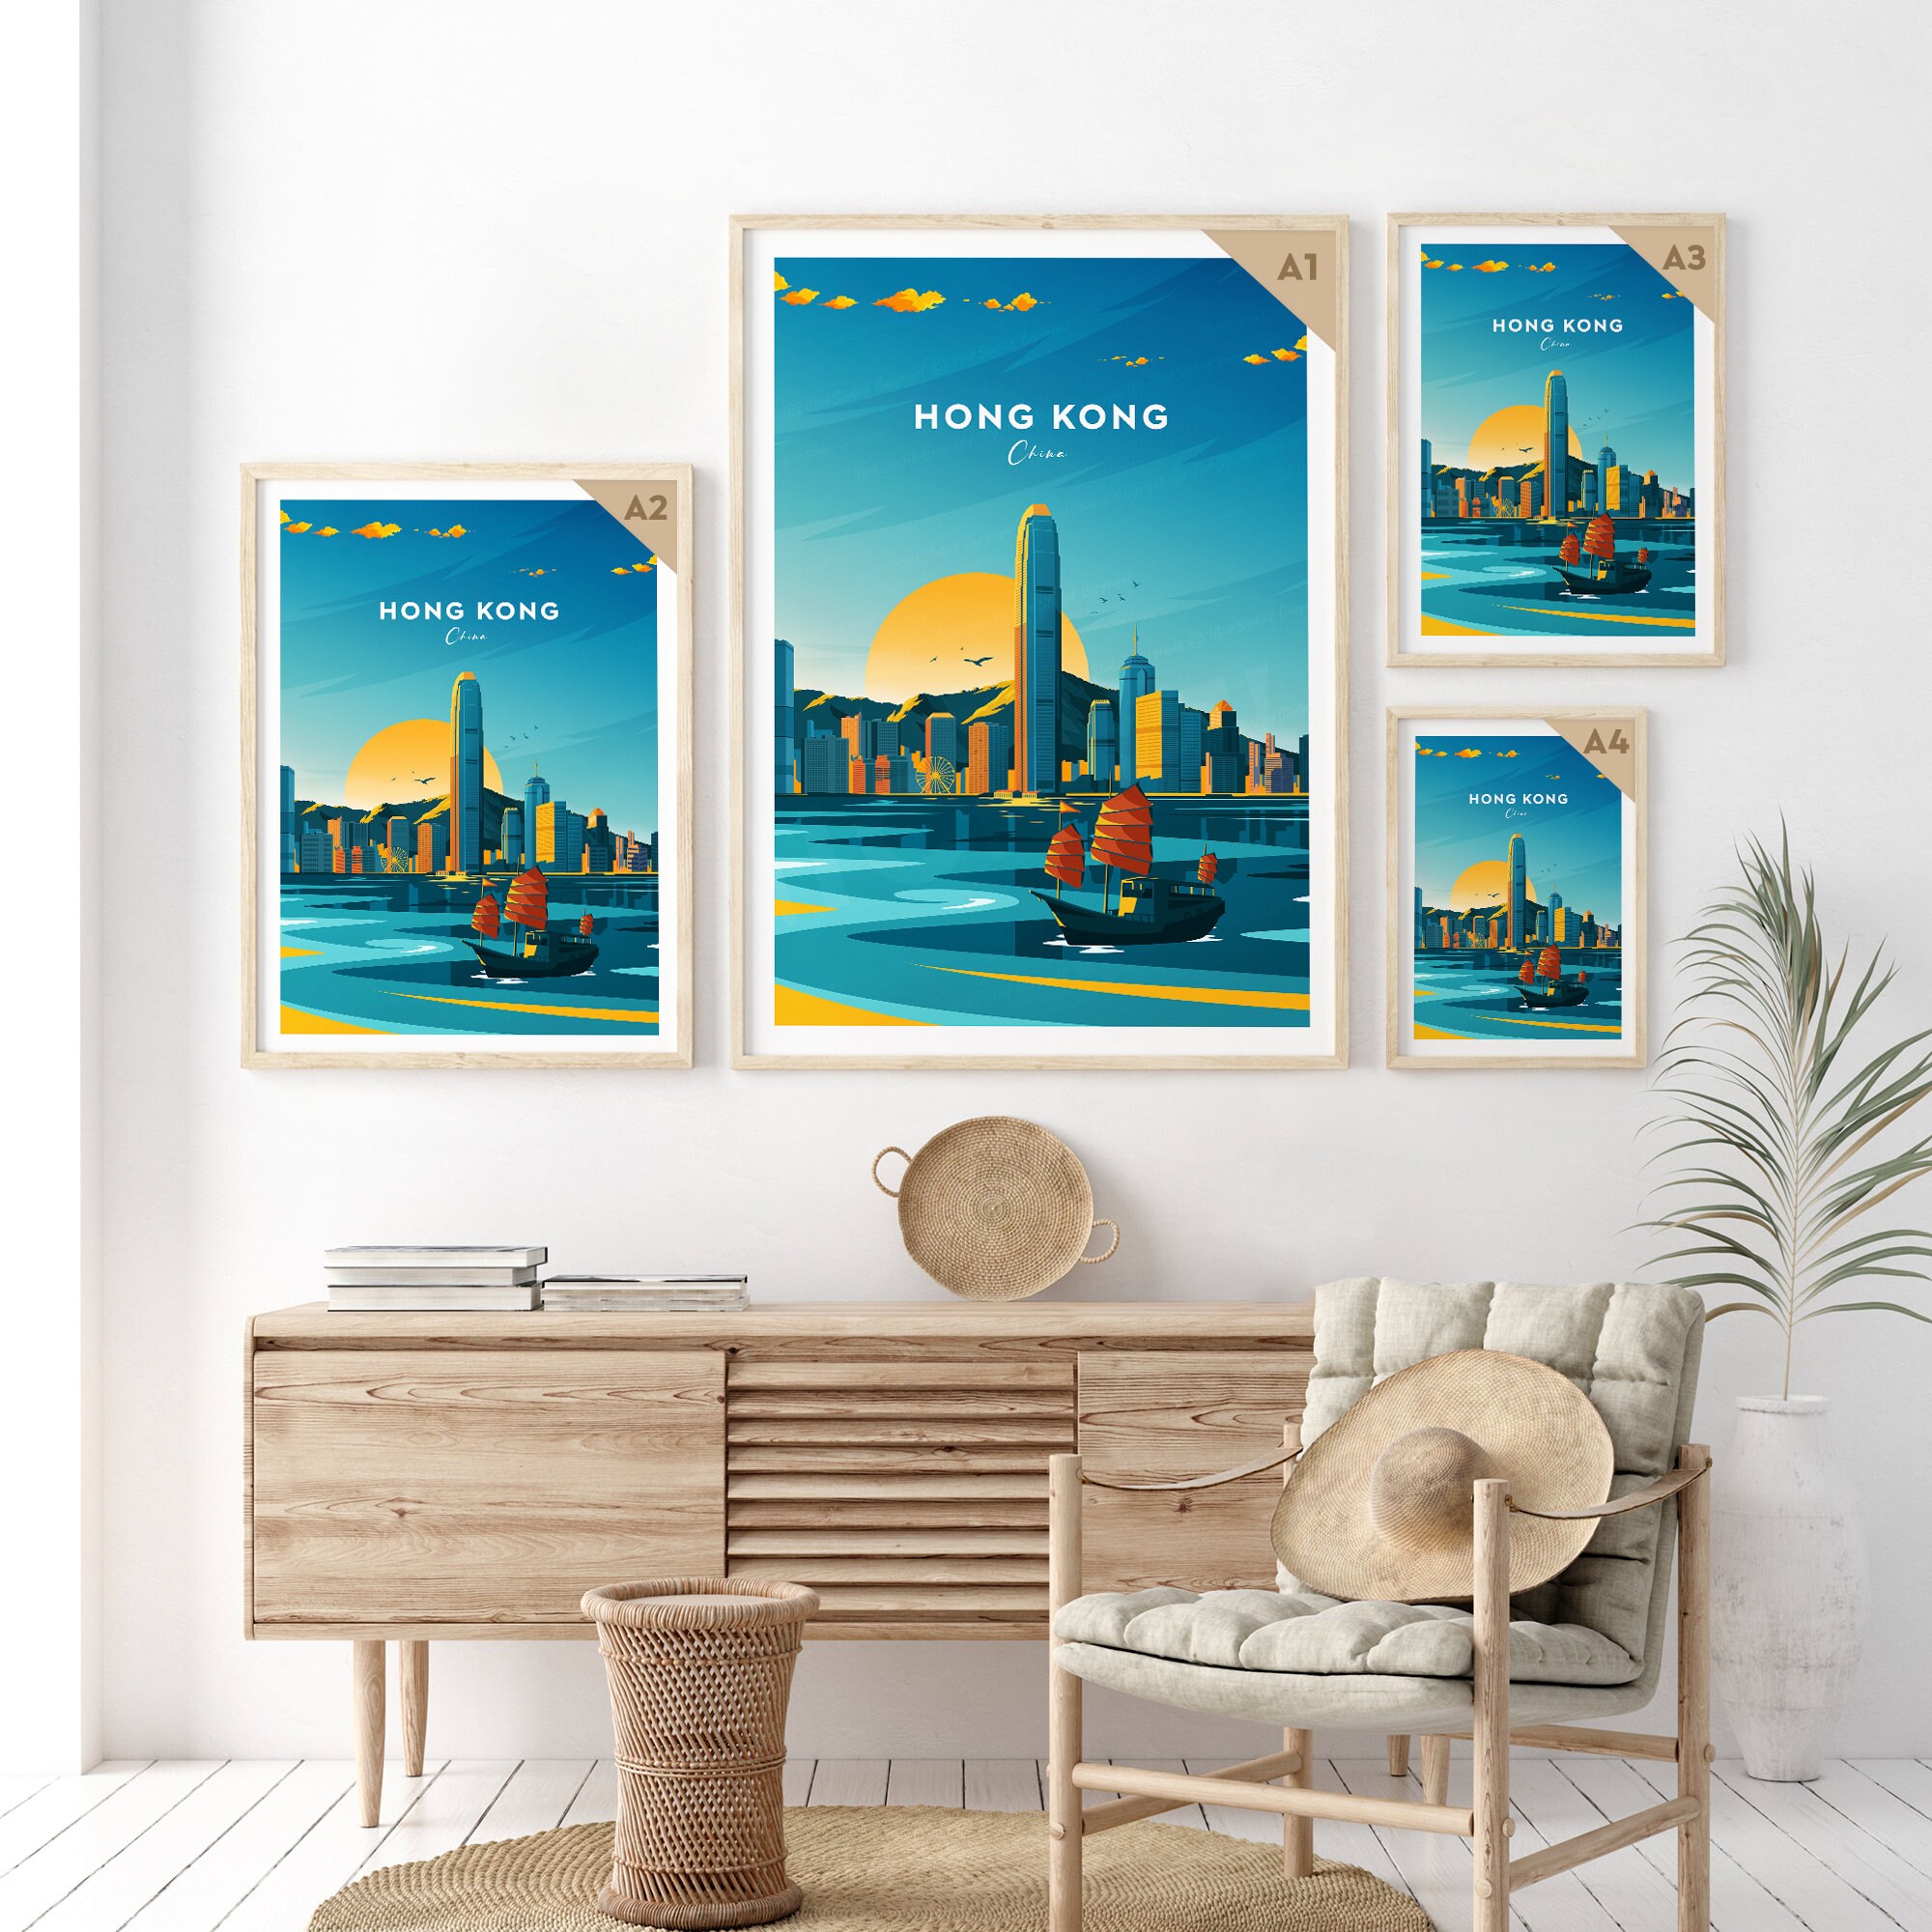 Discover Honk Kong traditional travel print - China, Hong Kong poster, Wedding gift, Birthday present